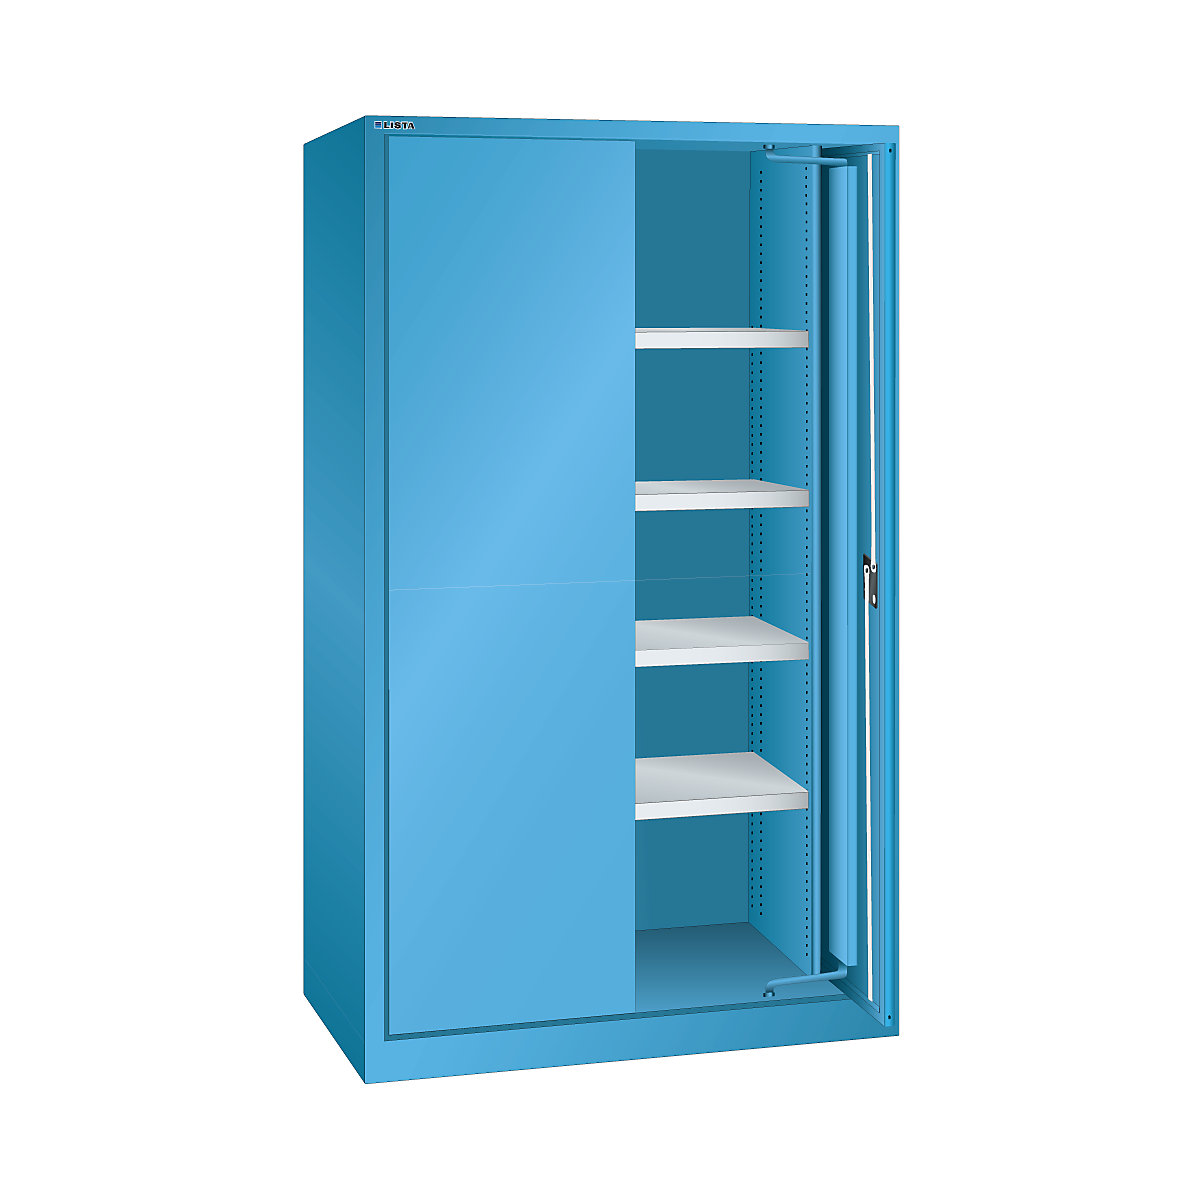 Armario con puertas retráctiles para cargas pesadas – LISTA, 4 baldas con puertas de chapa maciza, azul luminoso-8